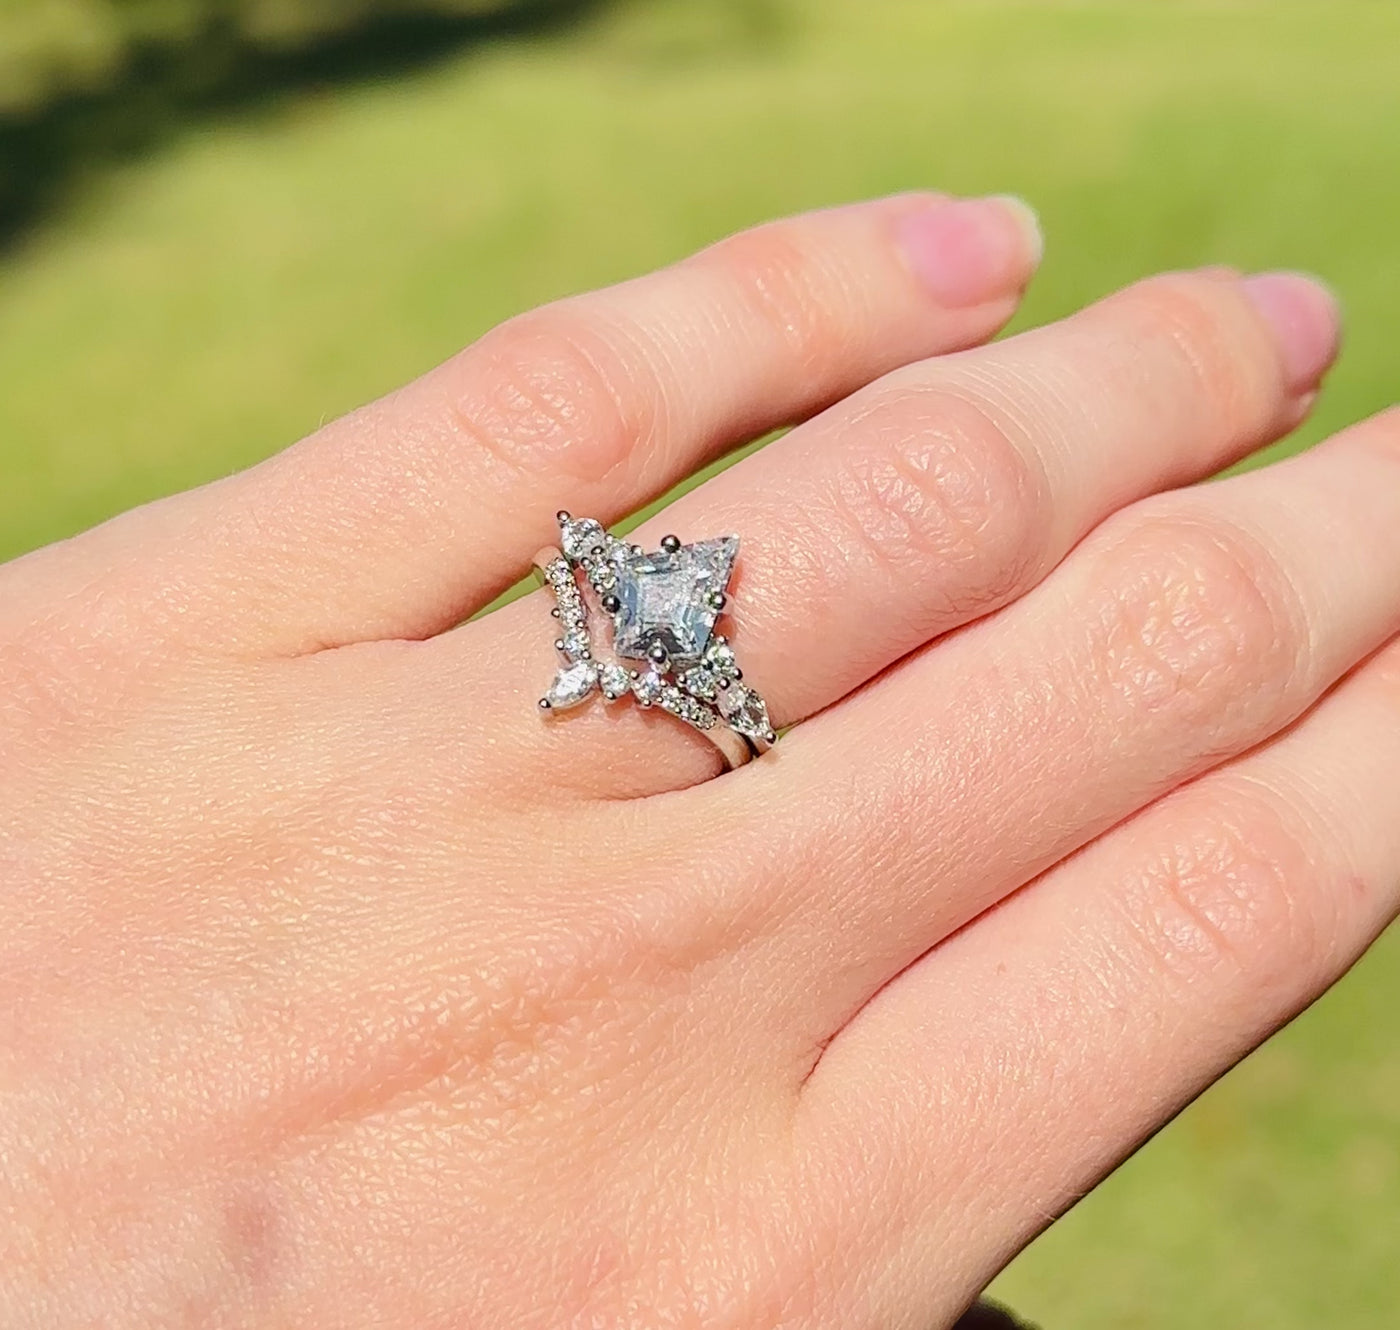 Trisha Yearwood Wedding Ring | Favorite engagement rings, Vintage engagement  rings, Cz rings engagement